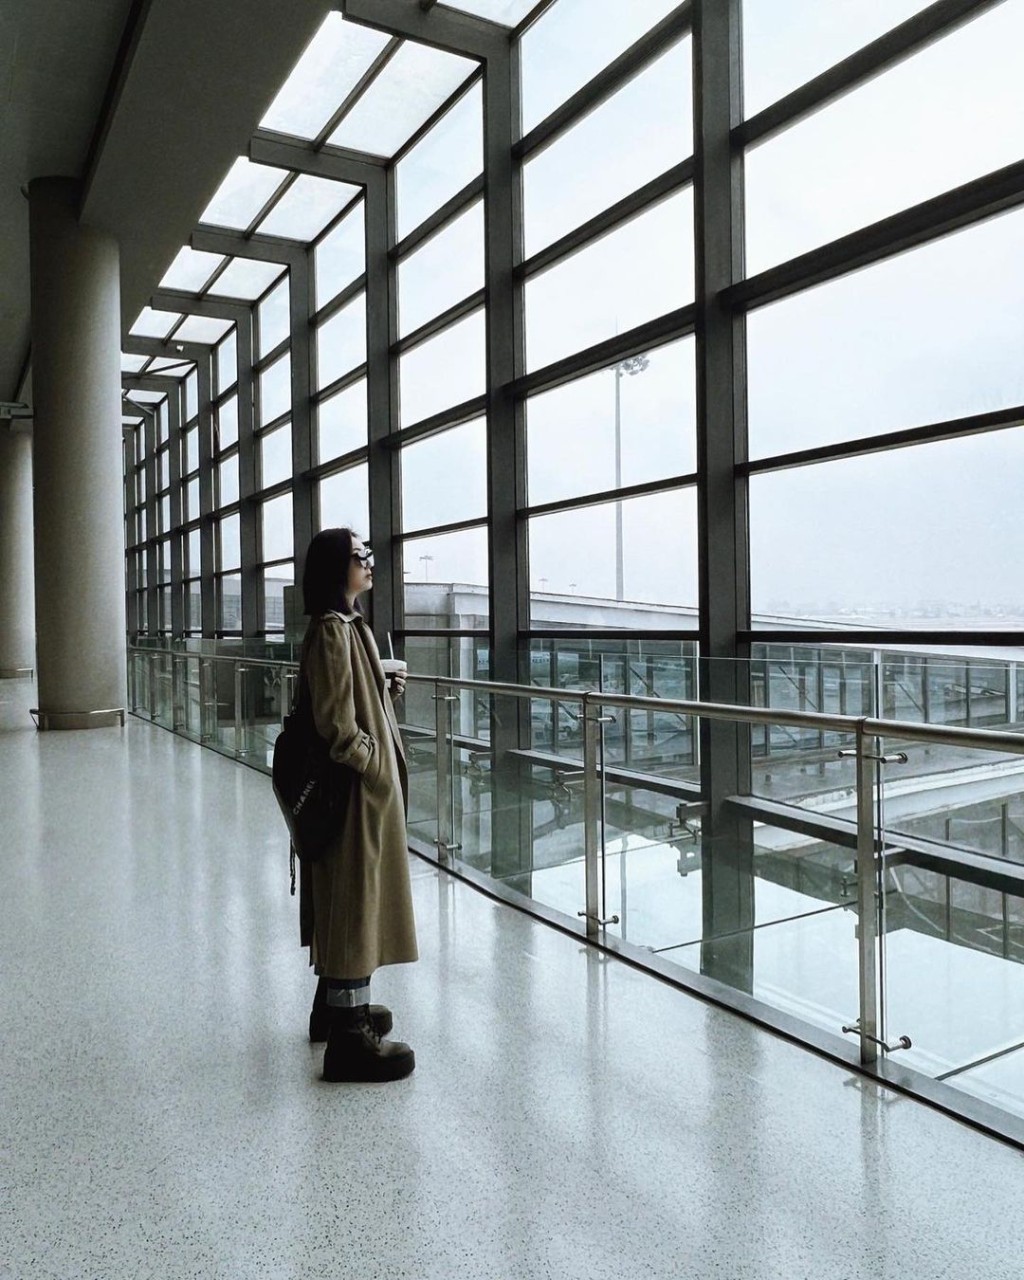 千嬅分享了一张似是在机场影的侧身照。